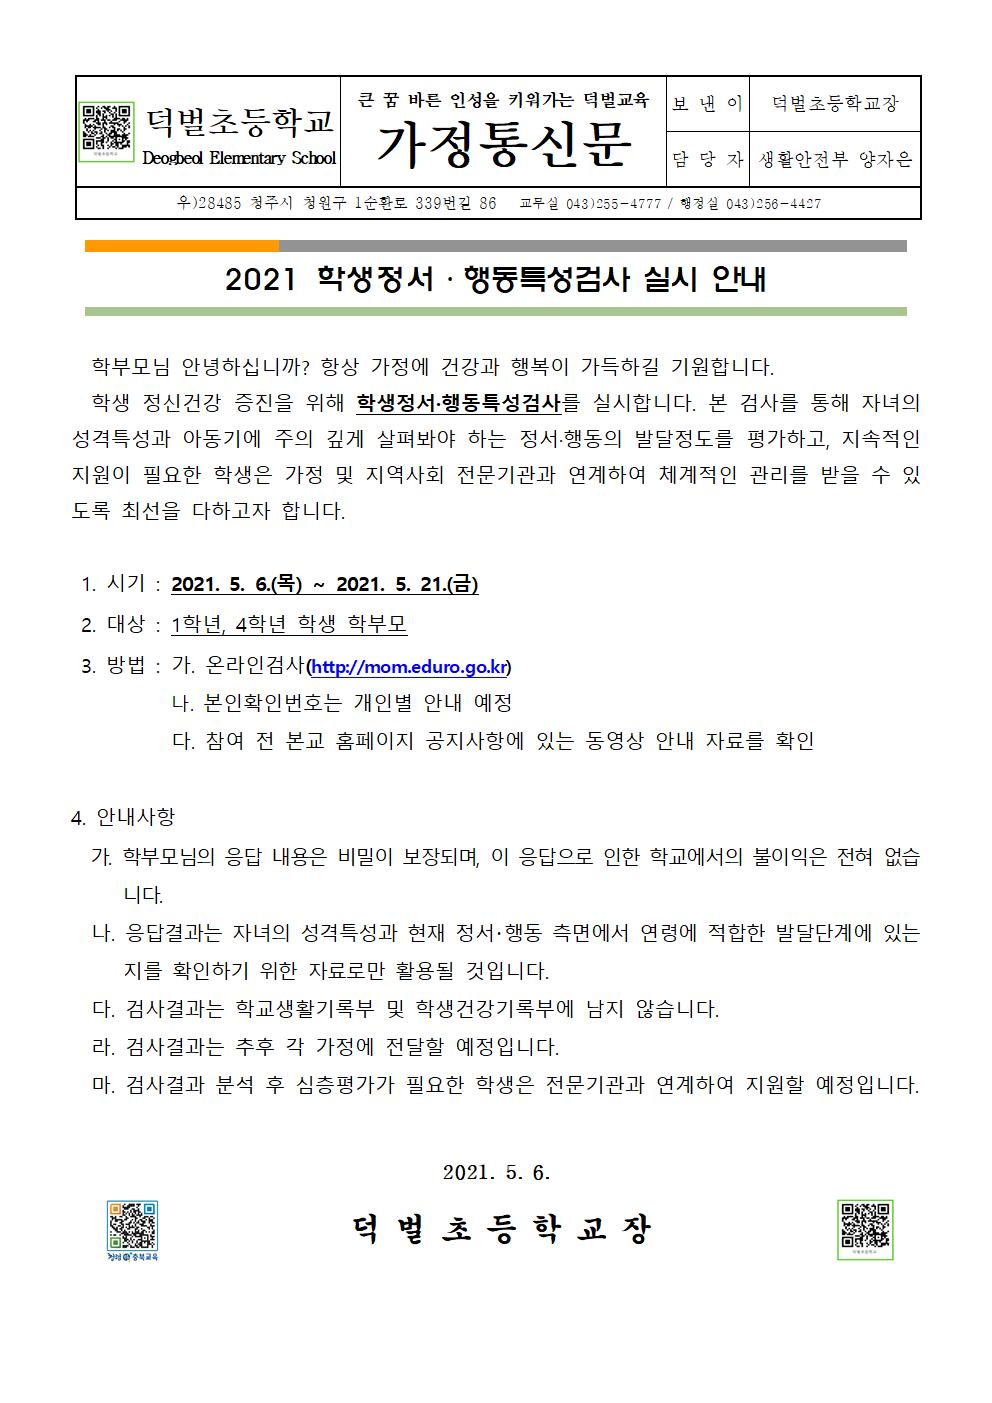 2021. 학생정서행동특성검사 가정통신문001